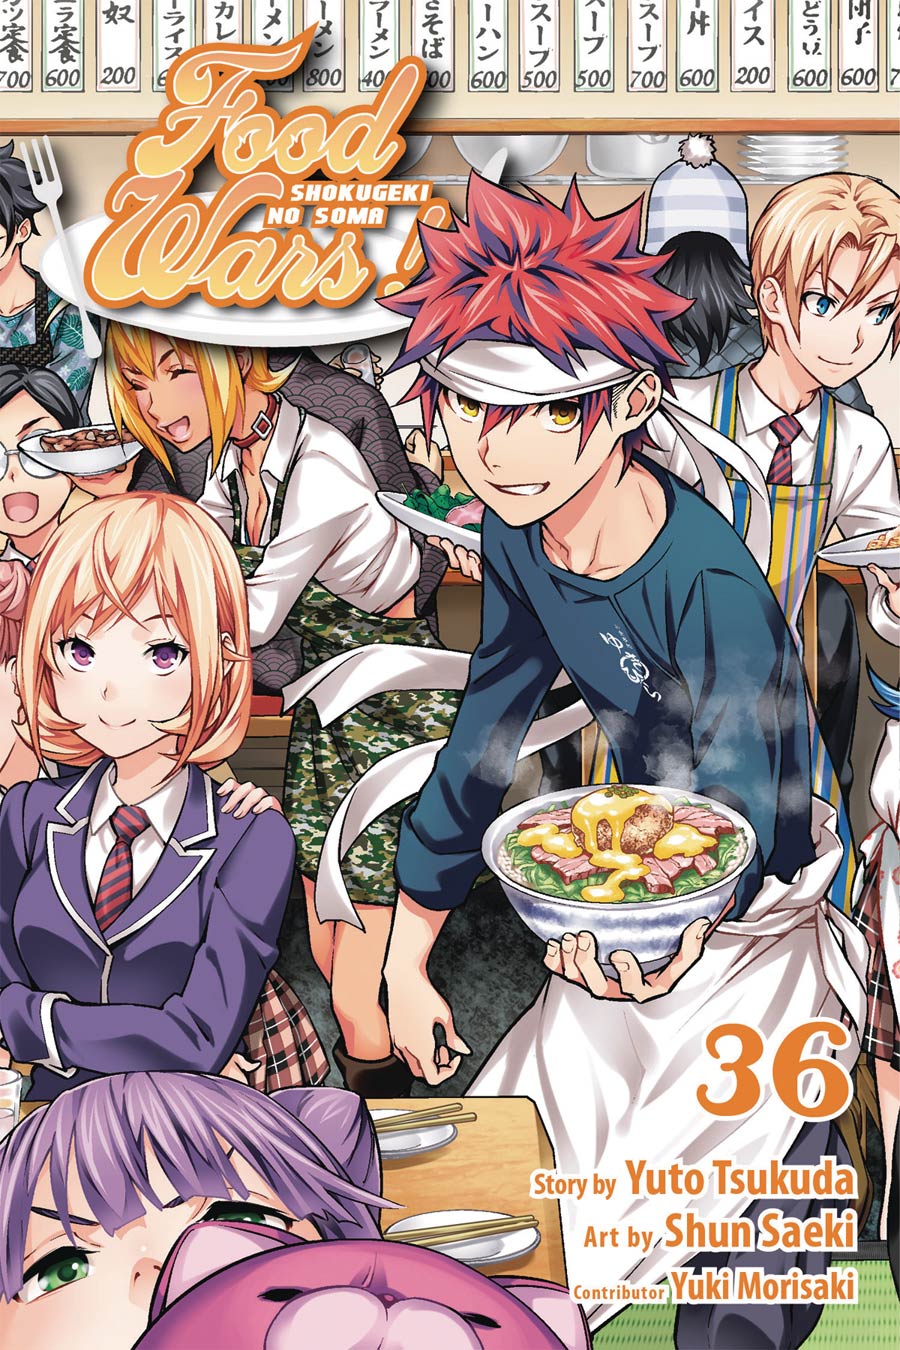 Food Wars Shokugeki No Soma Vol 36 TP